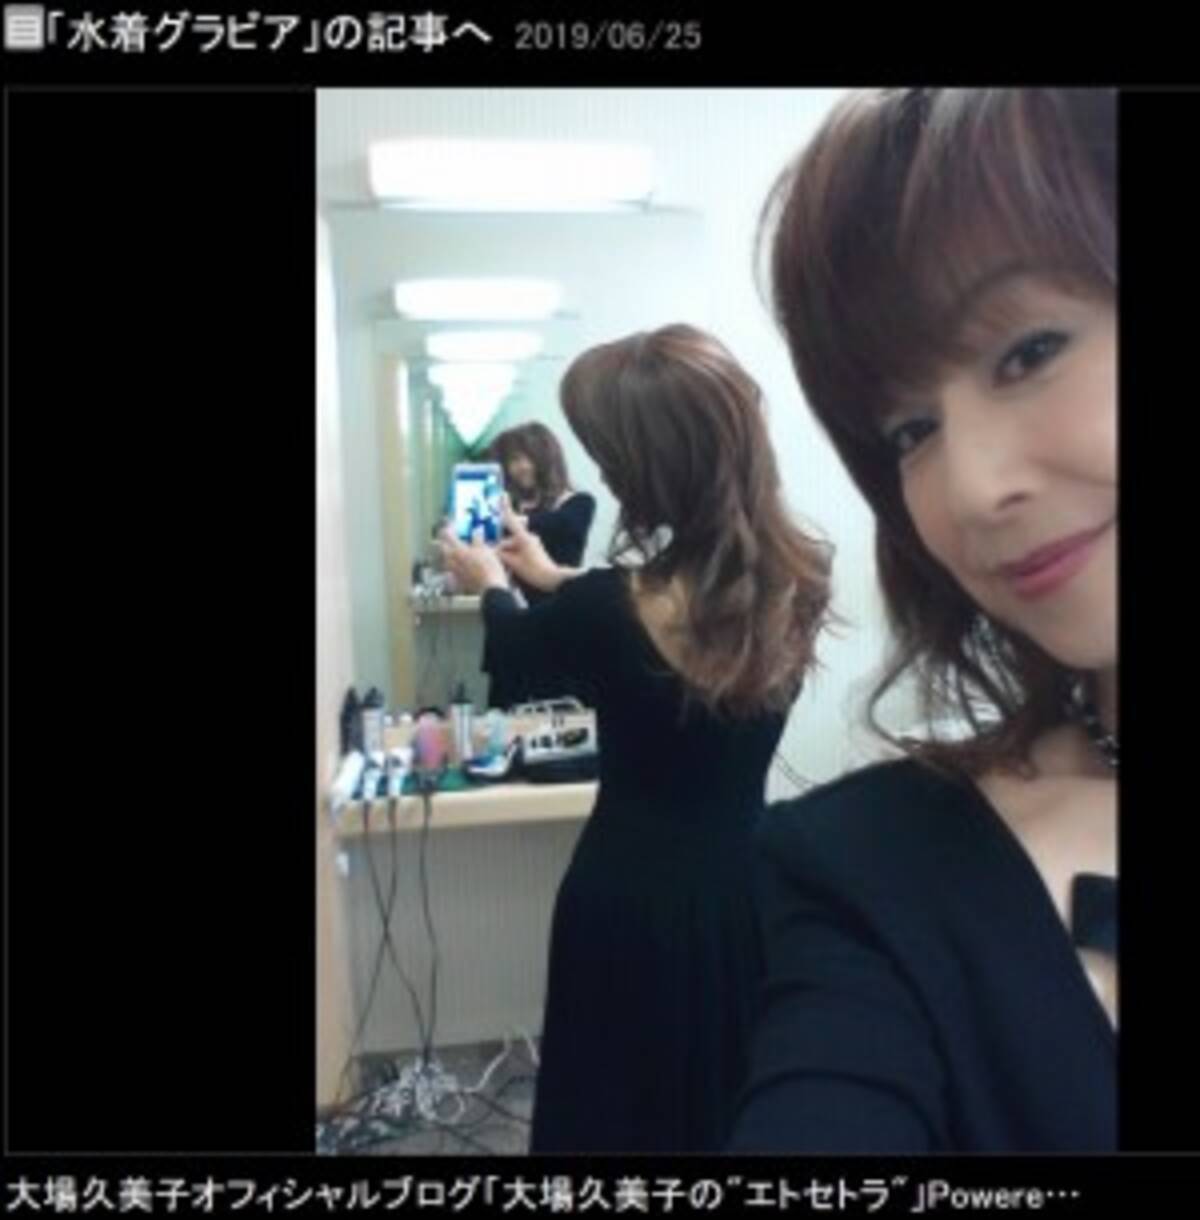 ダイエットをすることに疲れた 大場久美子 突然のブログ休止宣言 19年6月30日 エキサイトニュース